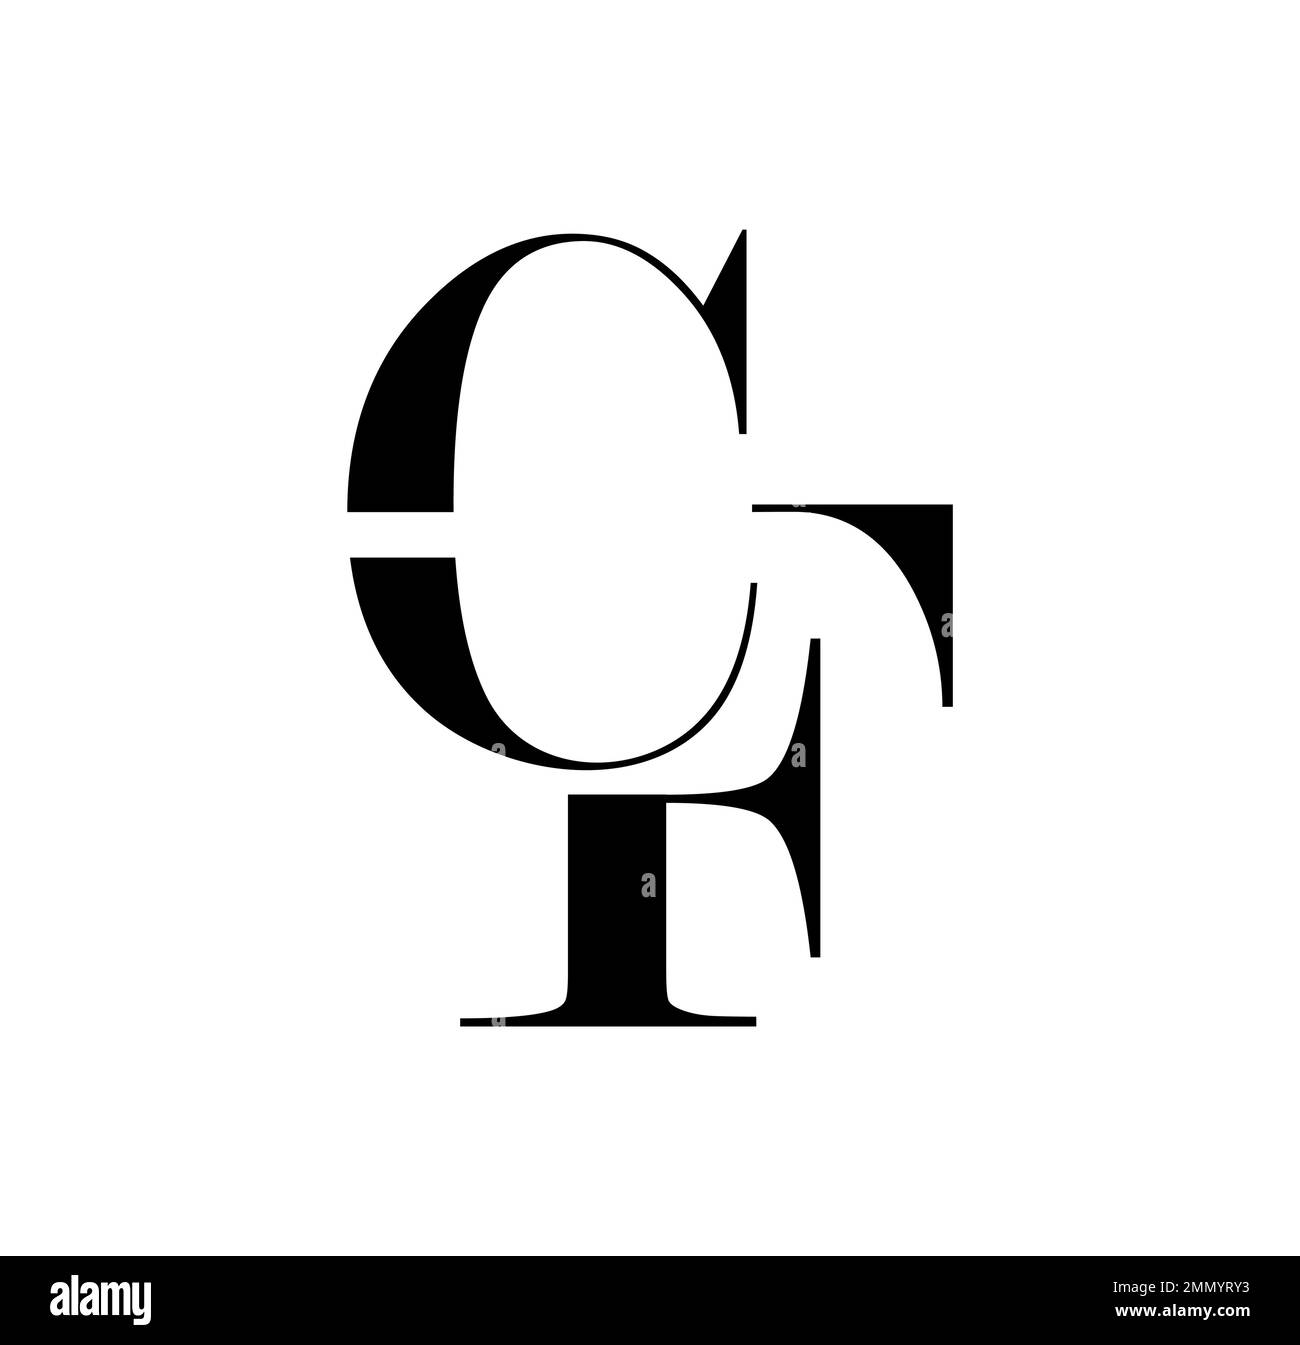 Illustration vectorielle isolée sur fond blanc de Monogram logo vecteur lettres initiales CF Illustration de Vecteur